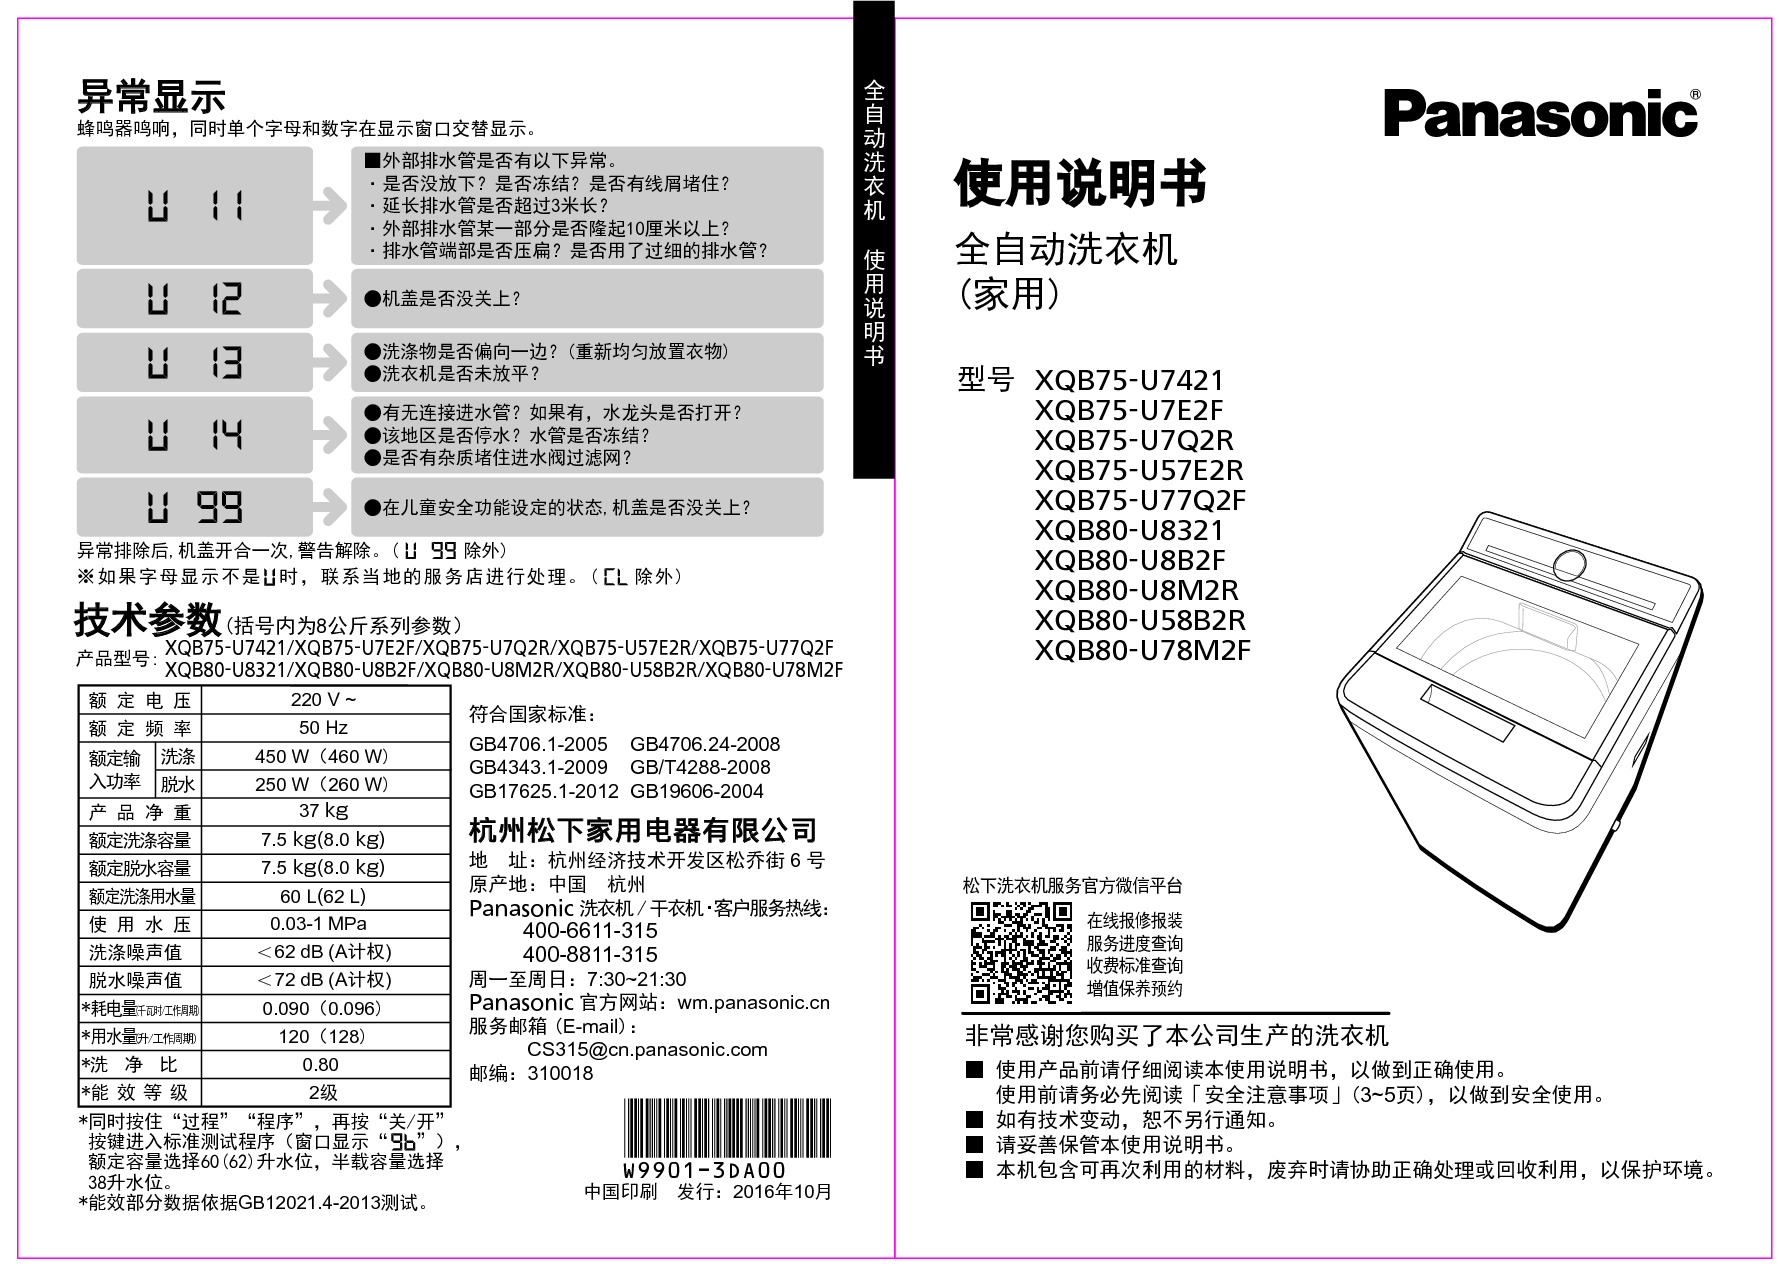 松下 Panasonic XQB75-U57E2R, XQB80-U78M2F 使用说明书 封面